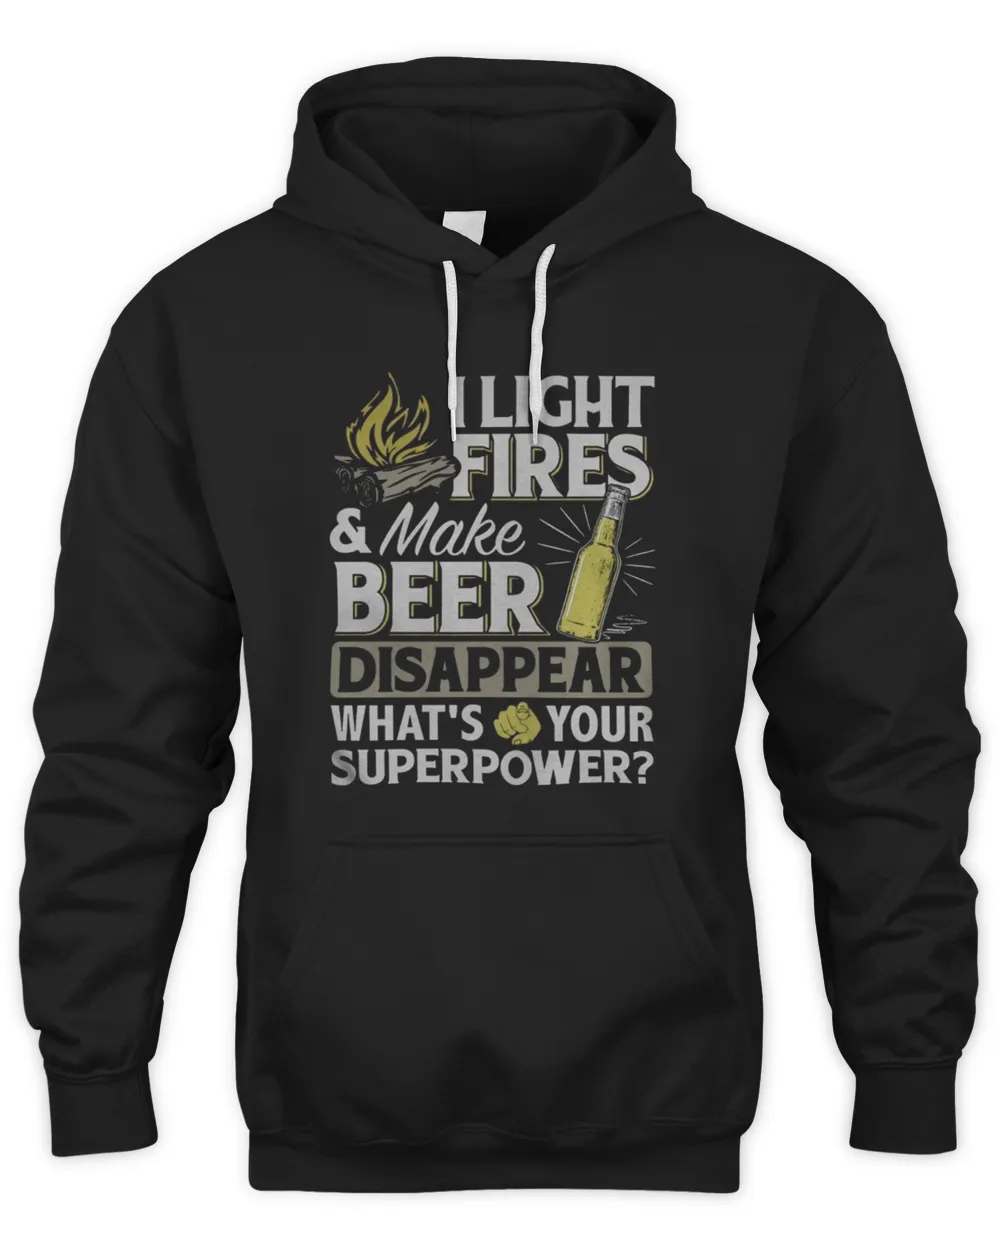 I light firesmake beer